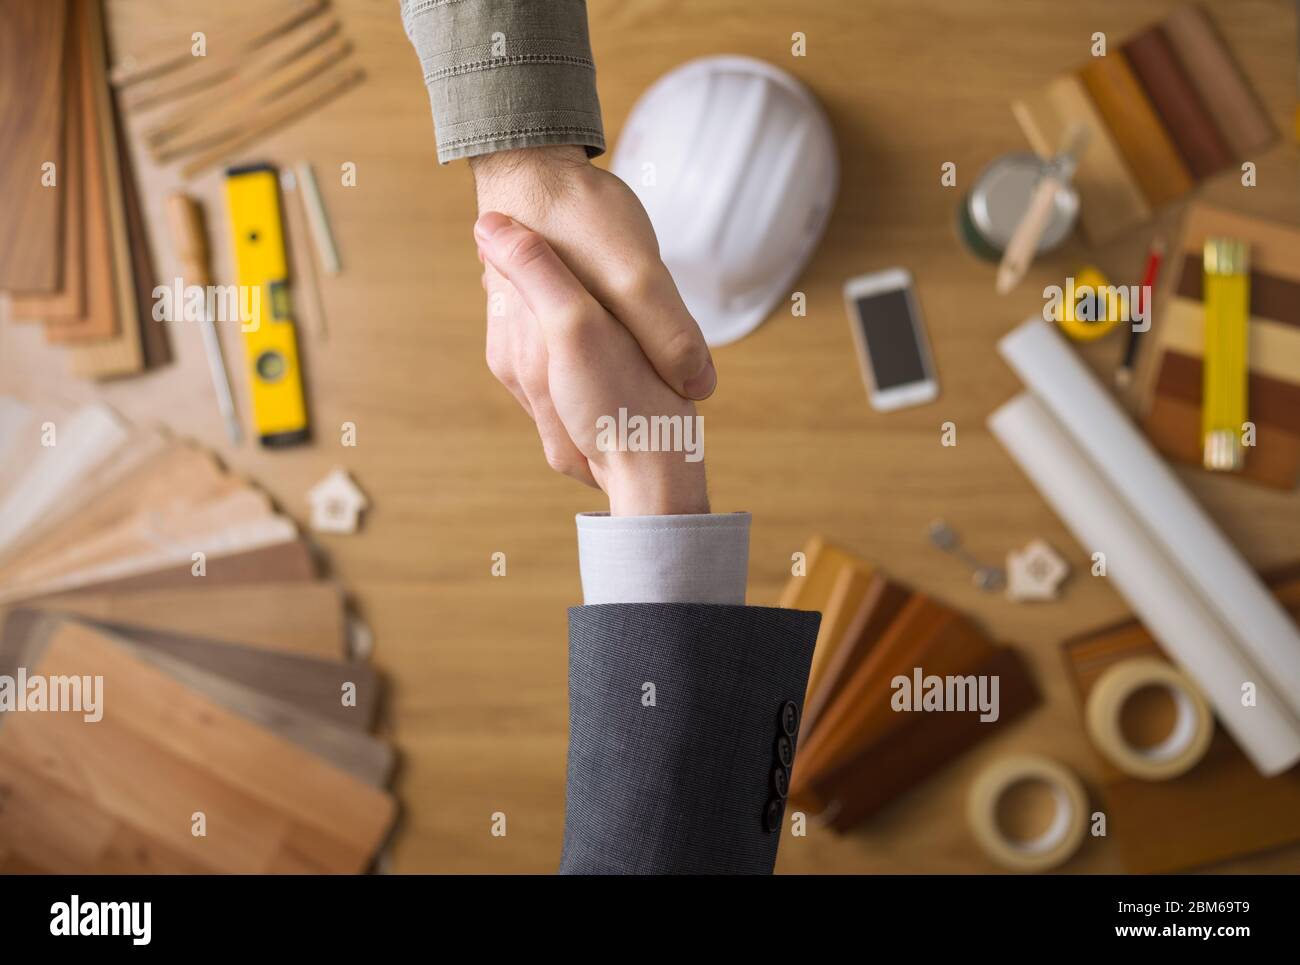 Bauingenieur und Geschäftsmann Händeschütteln Draufsicht hautnah, Desktop mit Arbeitsgeräten und Holz Farbfelder auf Hintergrund Stockfoto